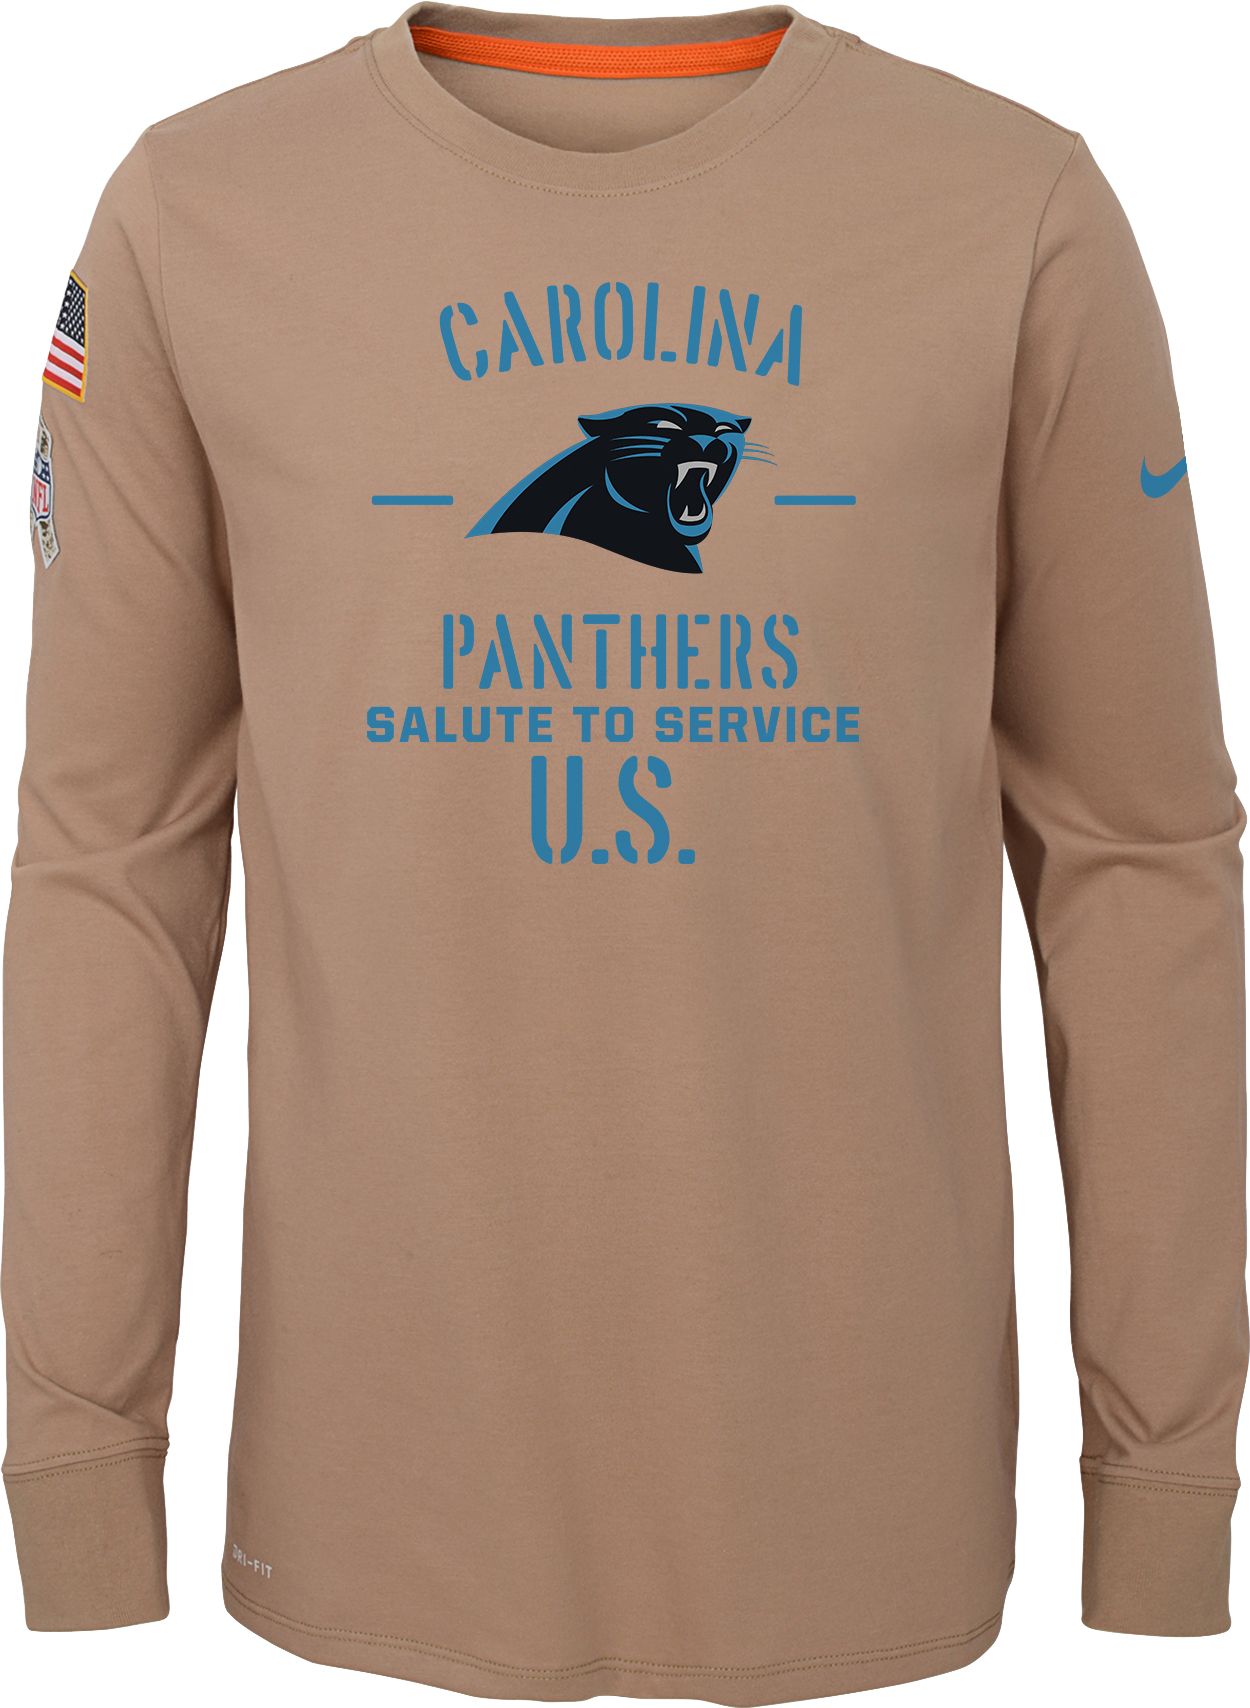 carolina panthers long sleeve shirt